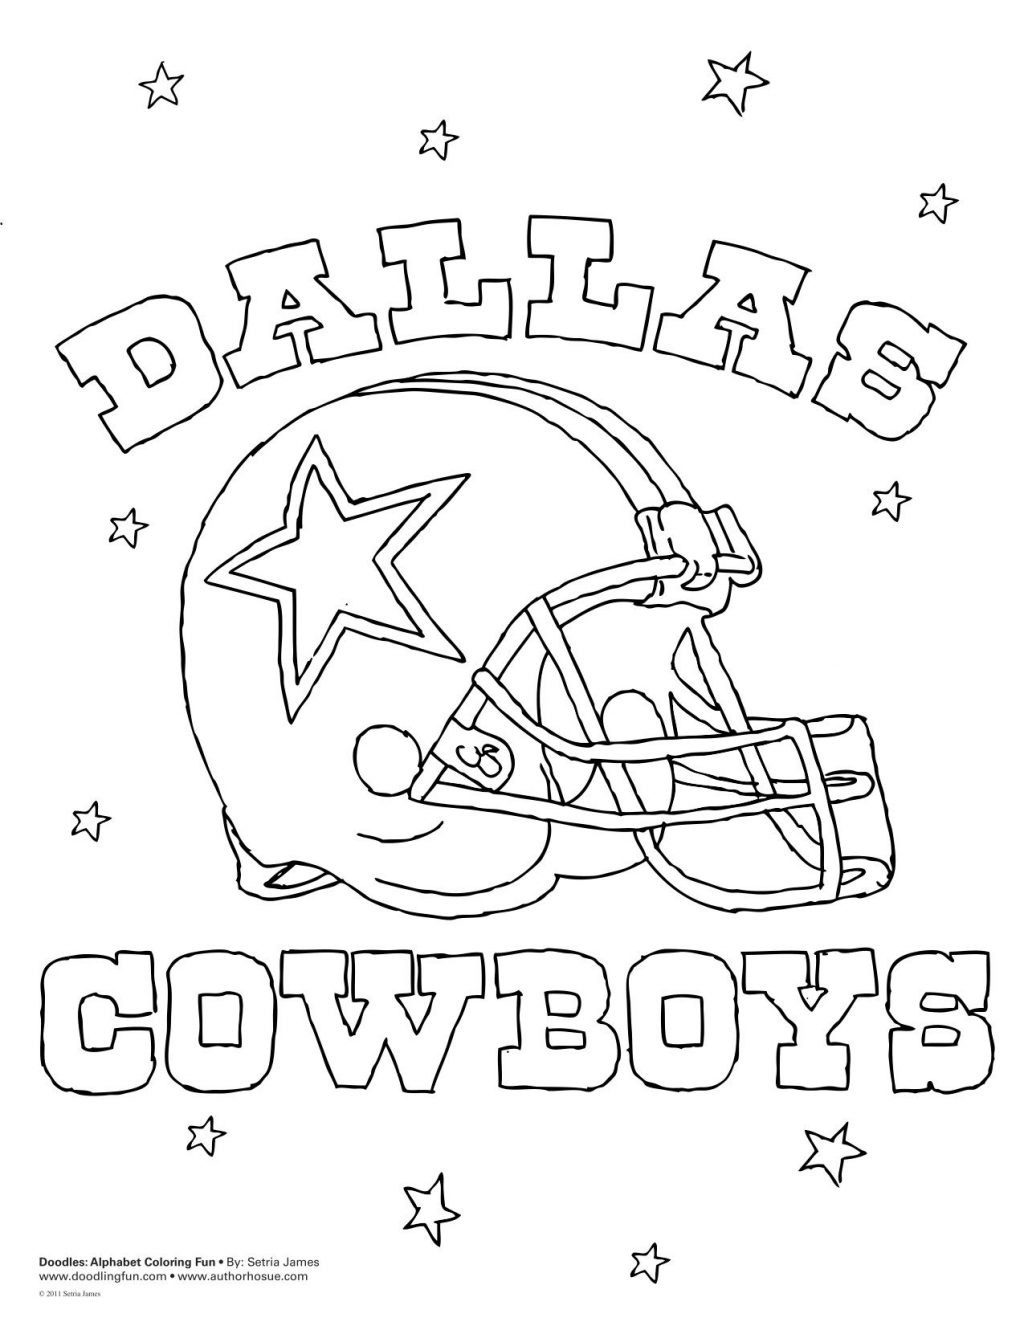 Coloring Pages Dallas Cowboys
 Coloring Remarkable Dallas Cowboys Coloring Pages